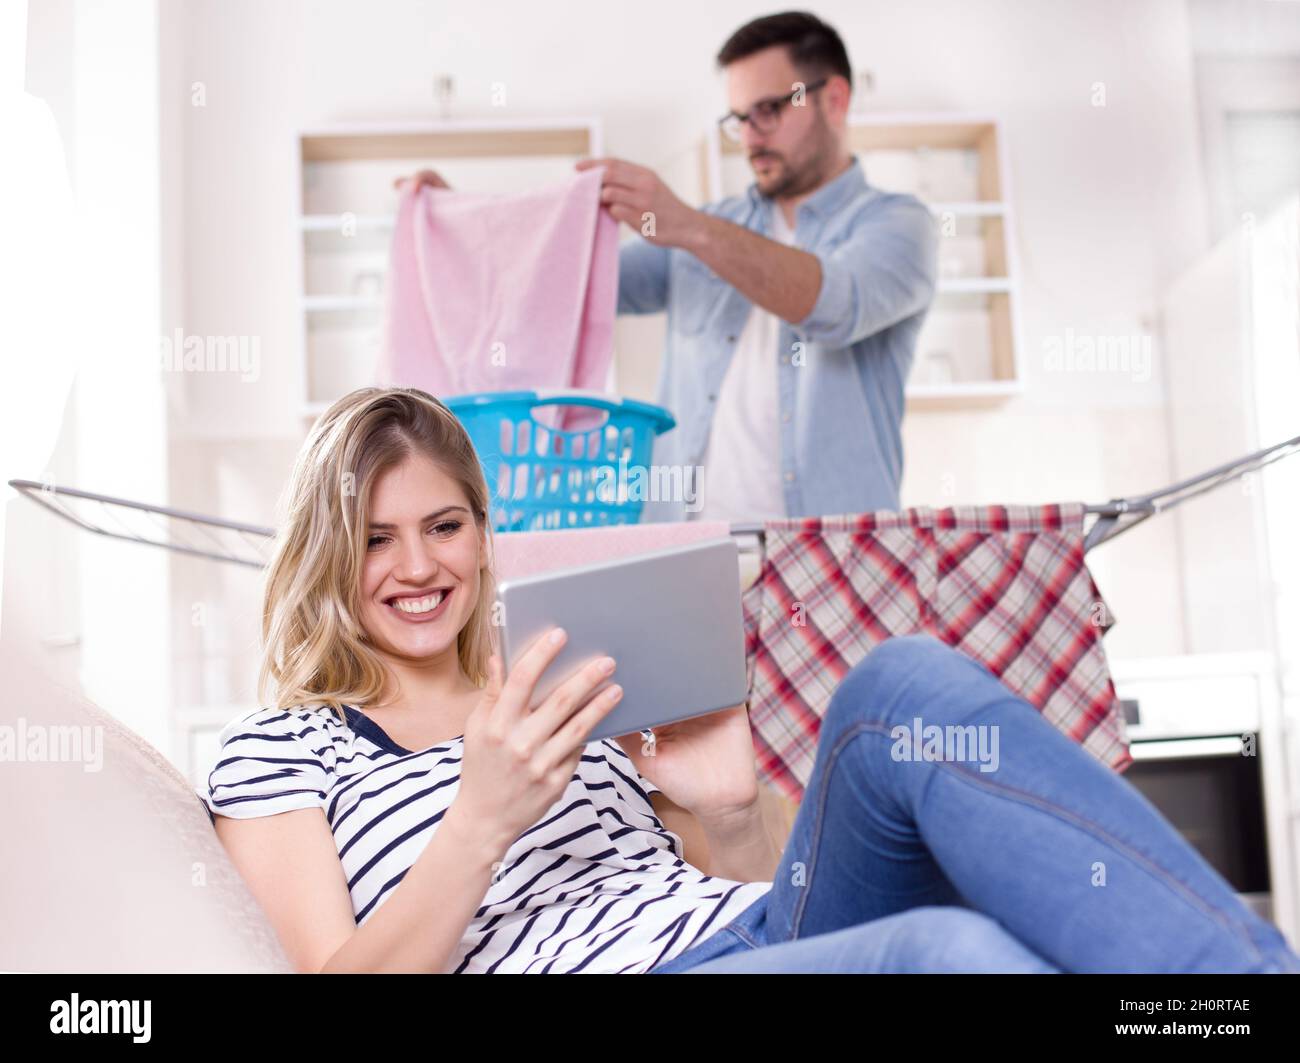 Schöne junge Frau, die sich auf dem Sofa ausruht und auf das Tablet schaut, während der Mann im Hintergrund Wäsche macht. Ehemann macht Aufgaben Konzept Stockfoto